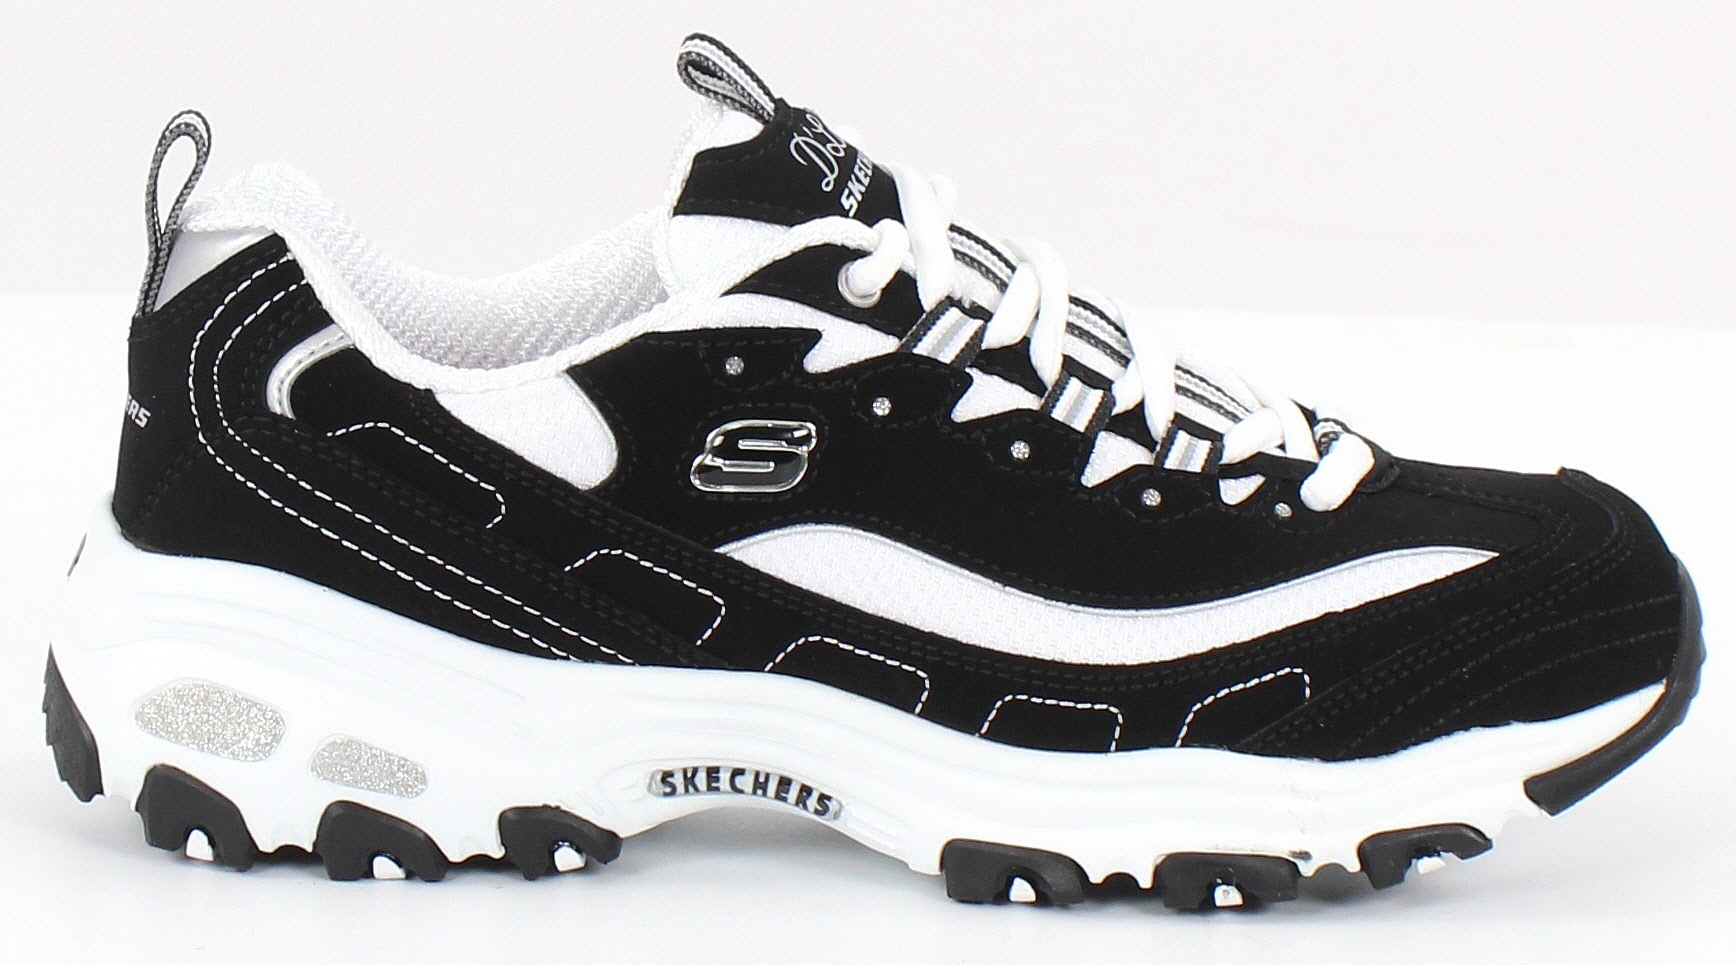 Skechers d`lite Sneakers 11930, Black/White - Stilettoshop.eu webstore